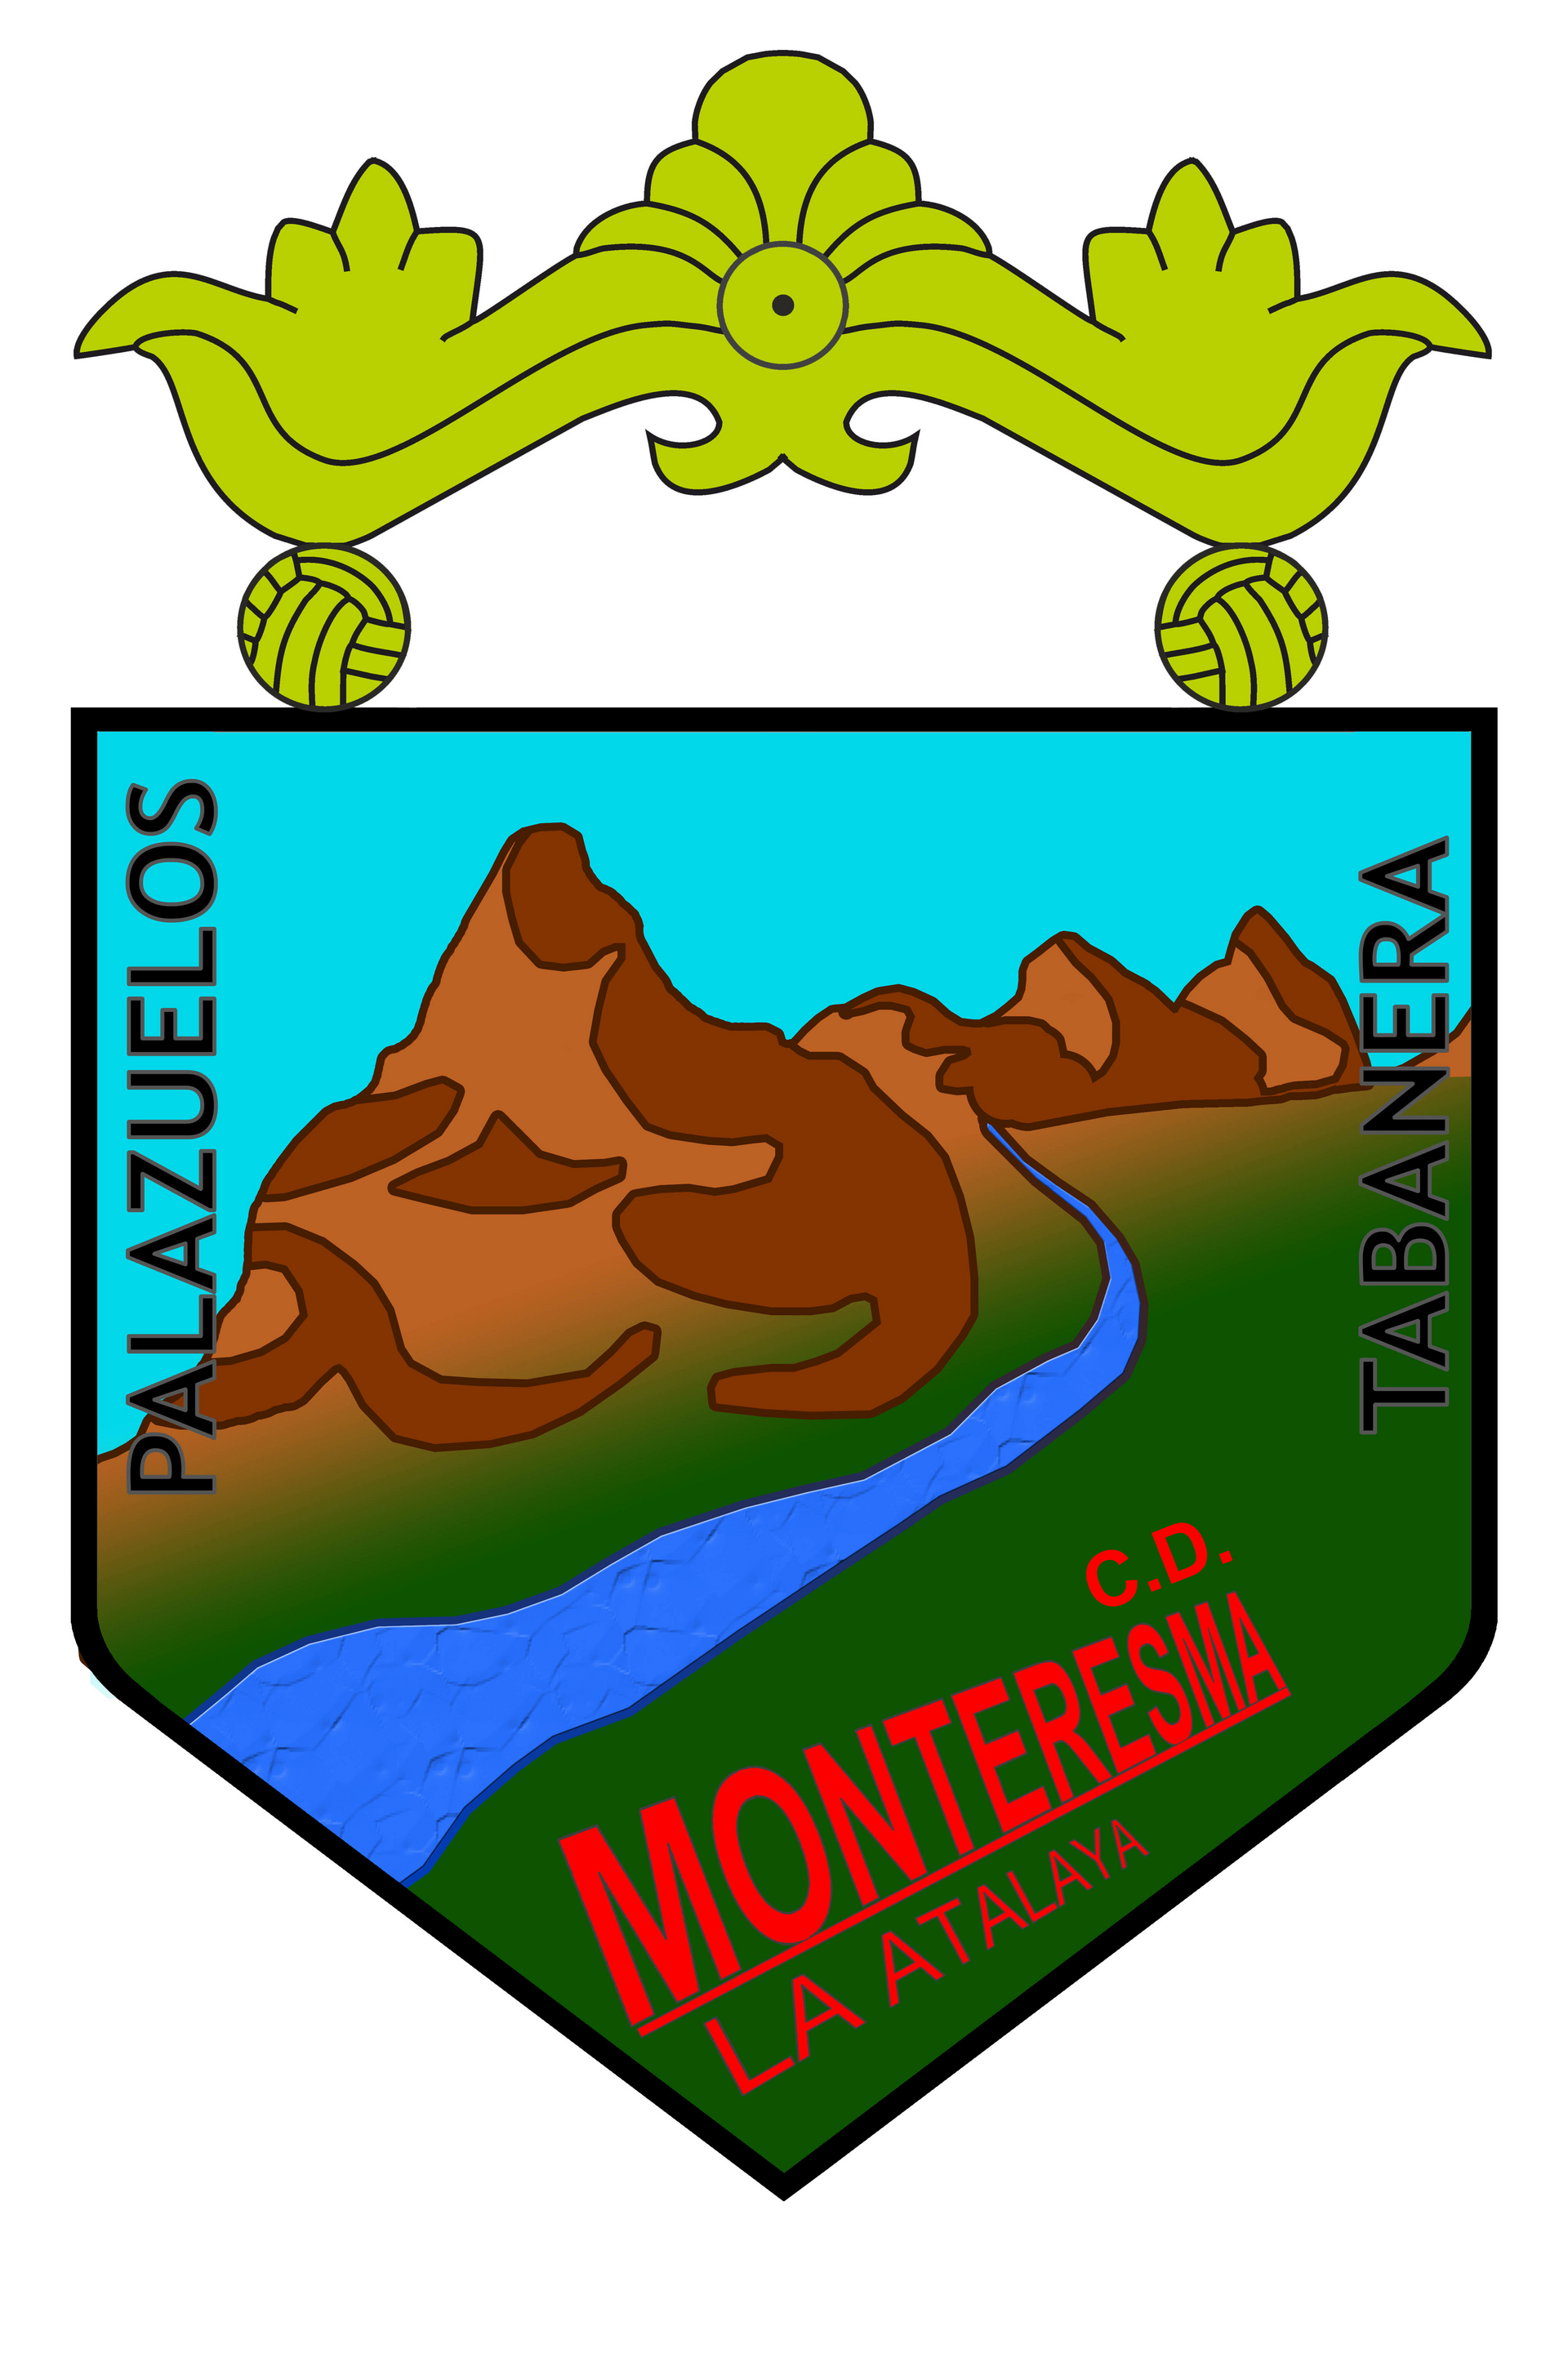 CD Monteresma-La Atalaya